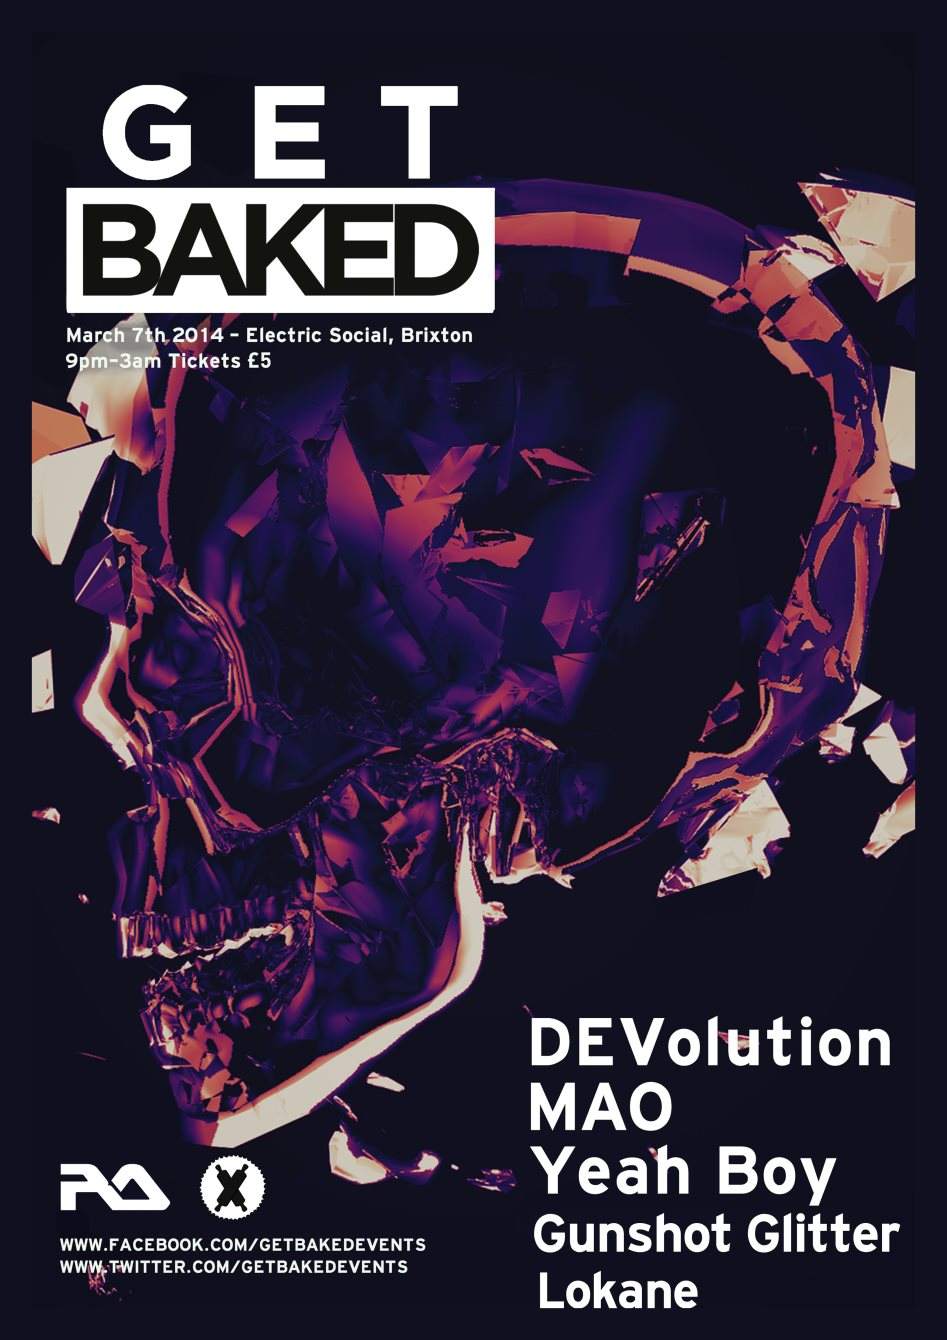 Get Baked presents Devolution MAO Yeah Boy Gunshot Glitter Lokane - フライヤー表